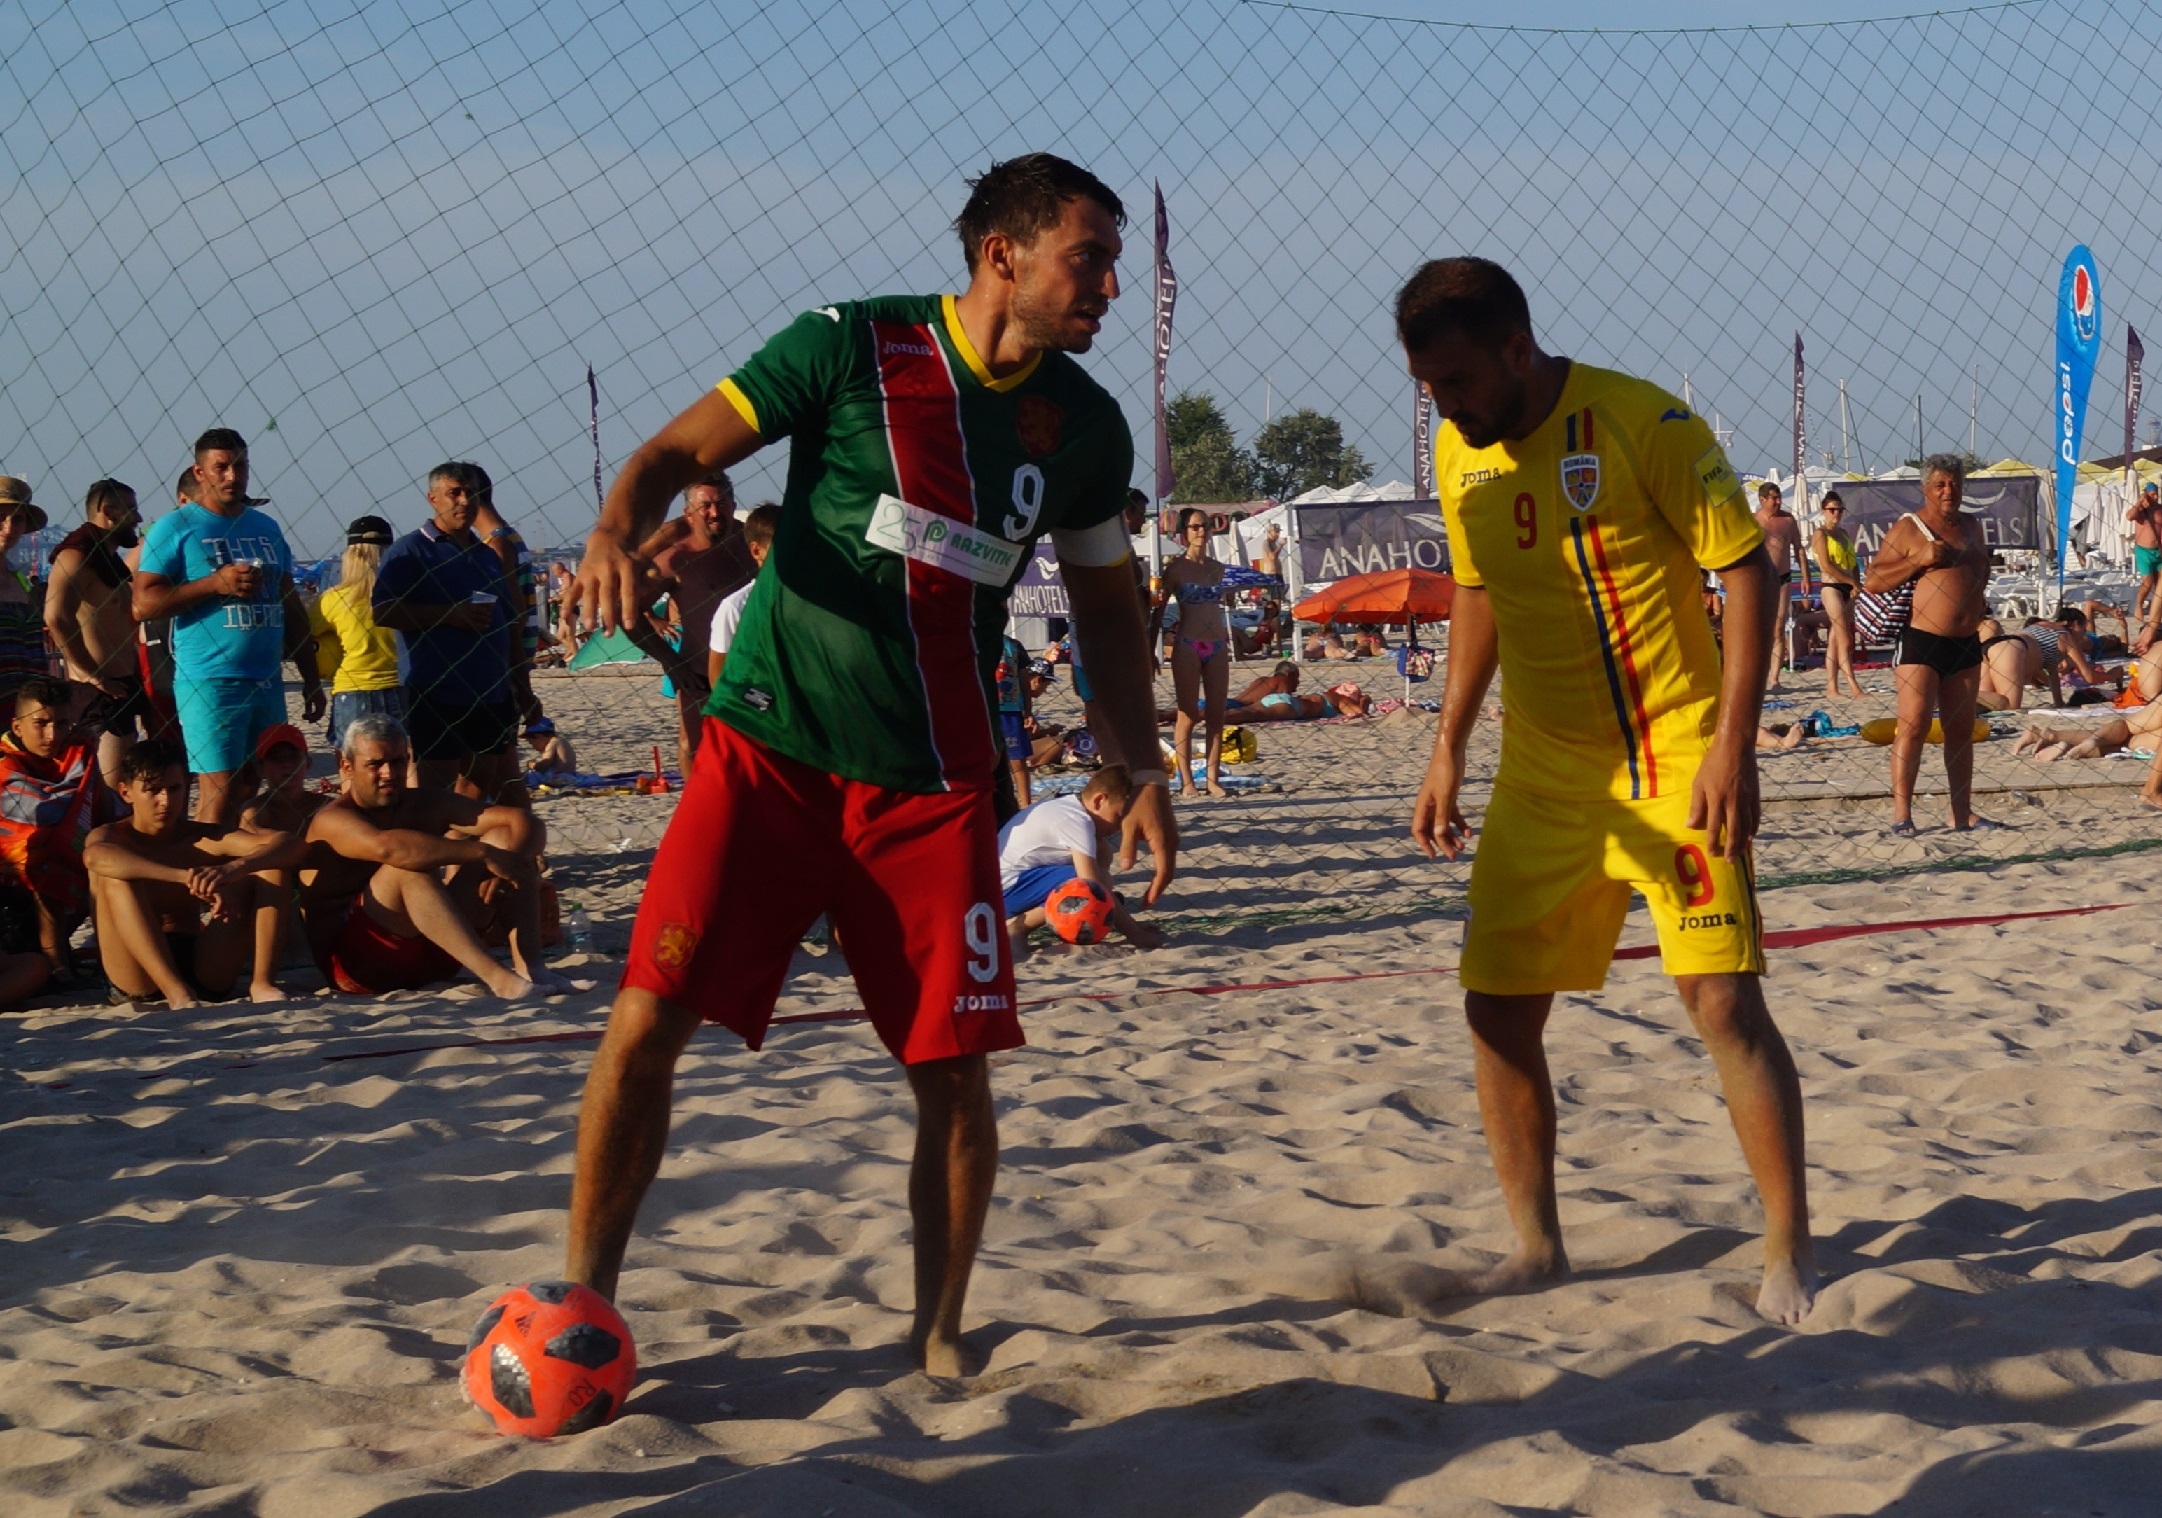 Националният отбор на България по плажен футбол пристигна в Португалия